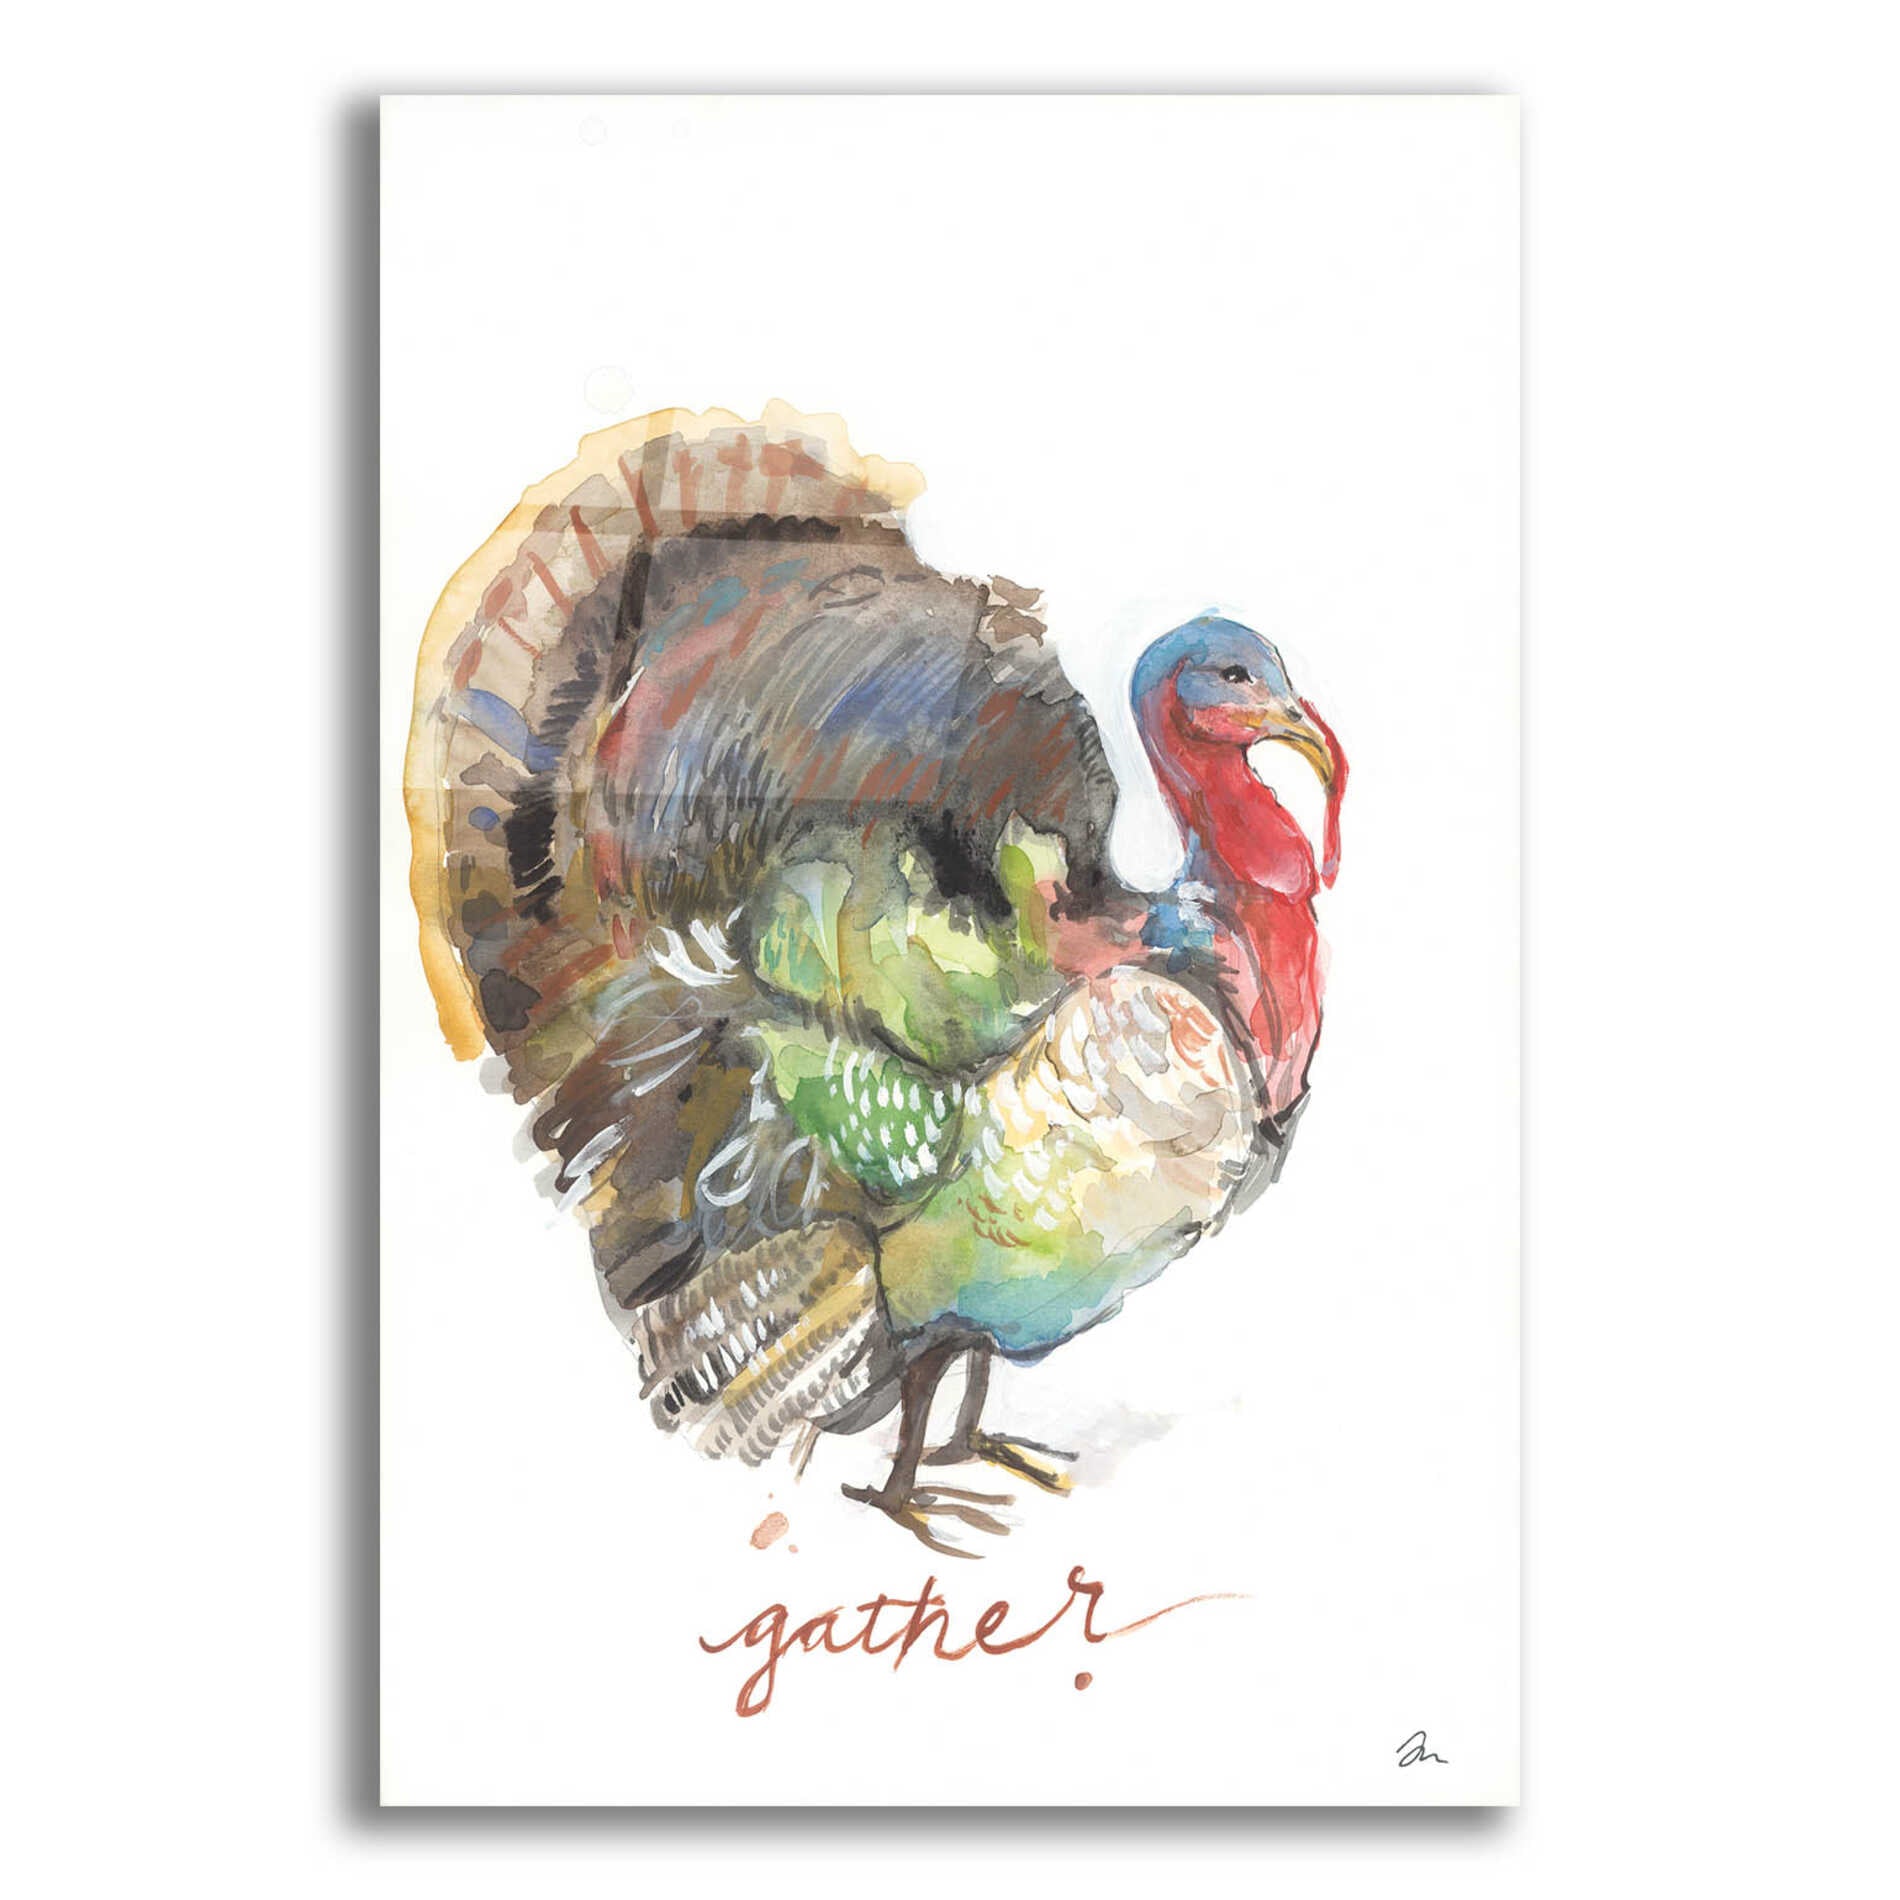 Epic Art 'Gather Turkey' by Jessica Mingo, Acrylic Glass Wall Art,12x16